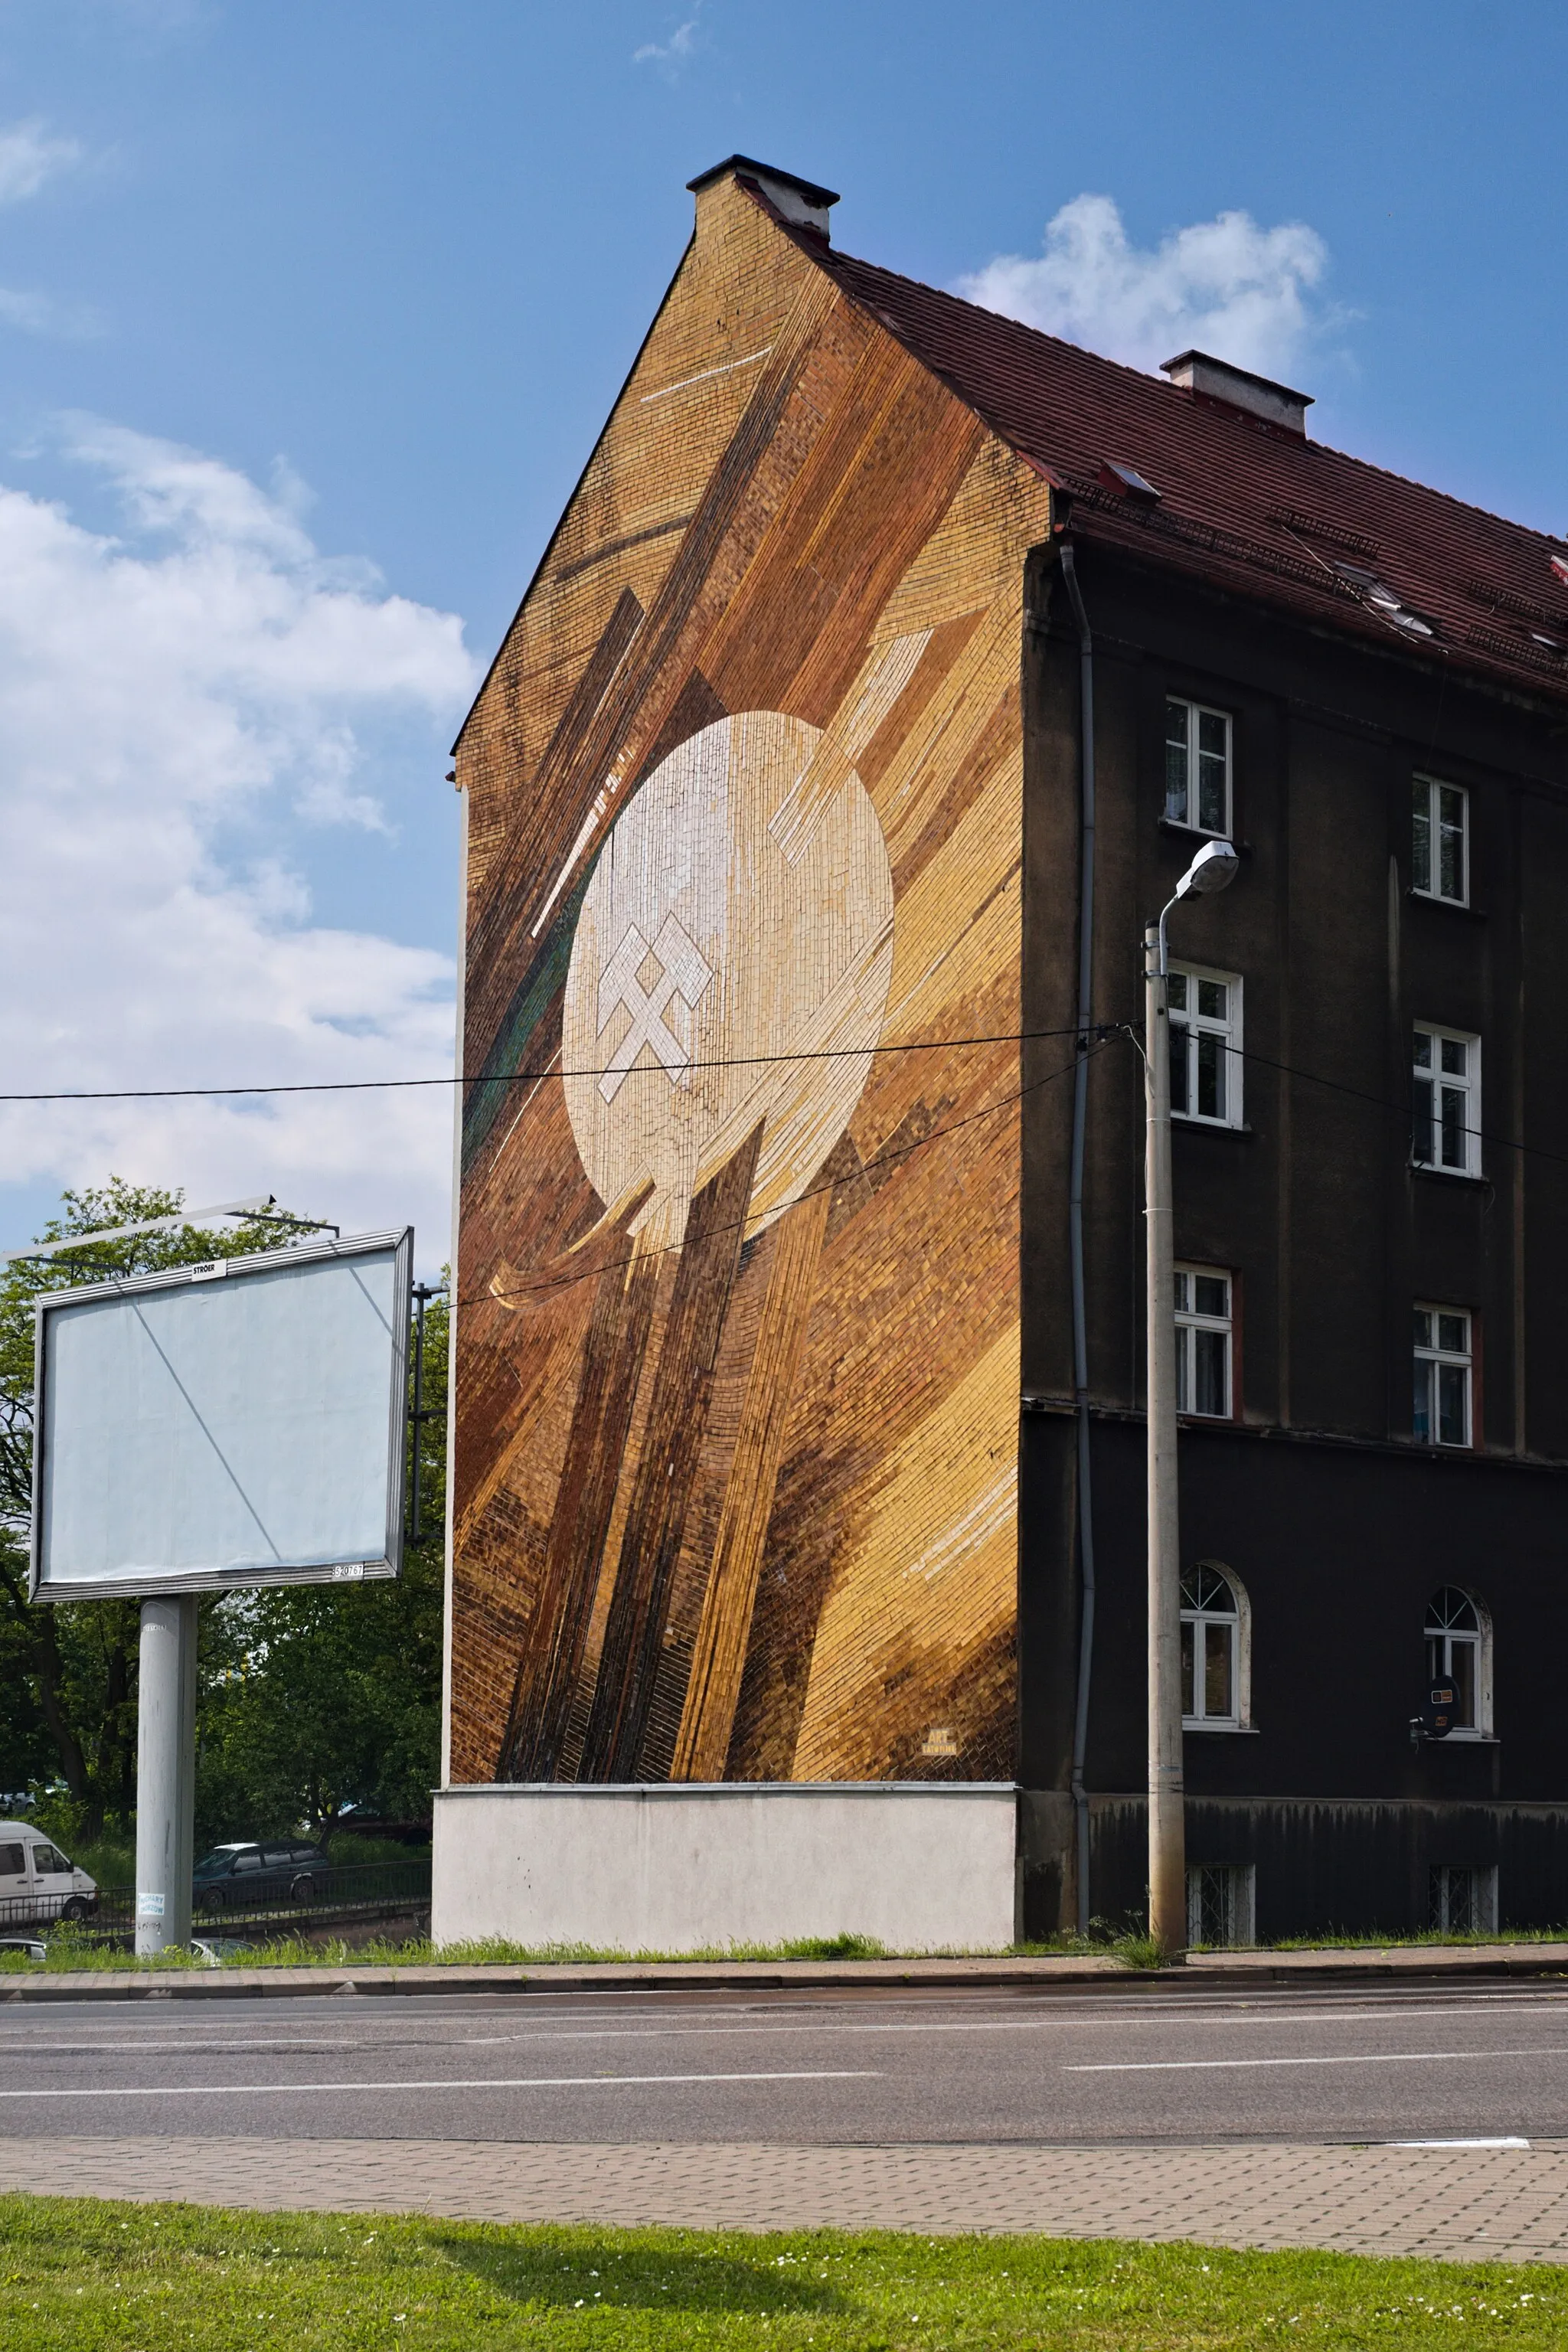 Photo showing: mozaika ceramiczna na ścianie budynku przy ul. 3 Maja 103d w Chorzowie, w centrum godłoo górnicze: pyrlik i żelosko, sygnowana w prawym dolnym rogu ART / KATOWICE; widok z południowego wschodu